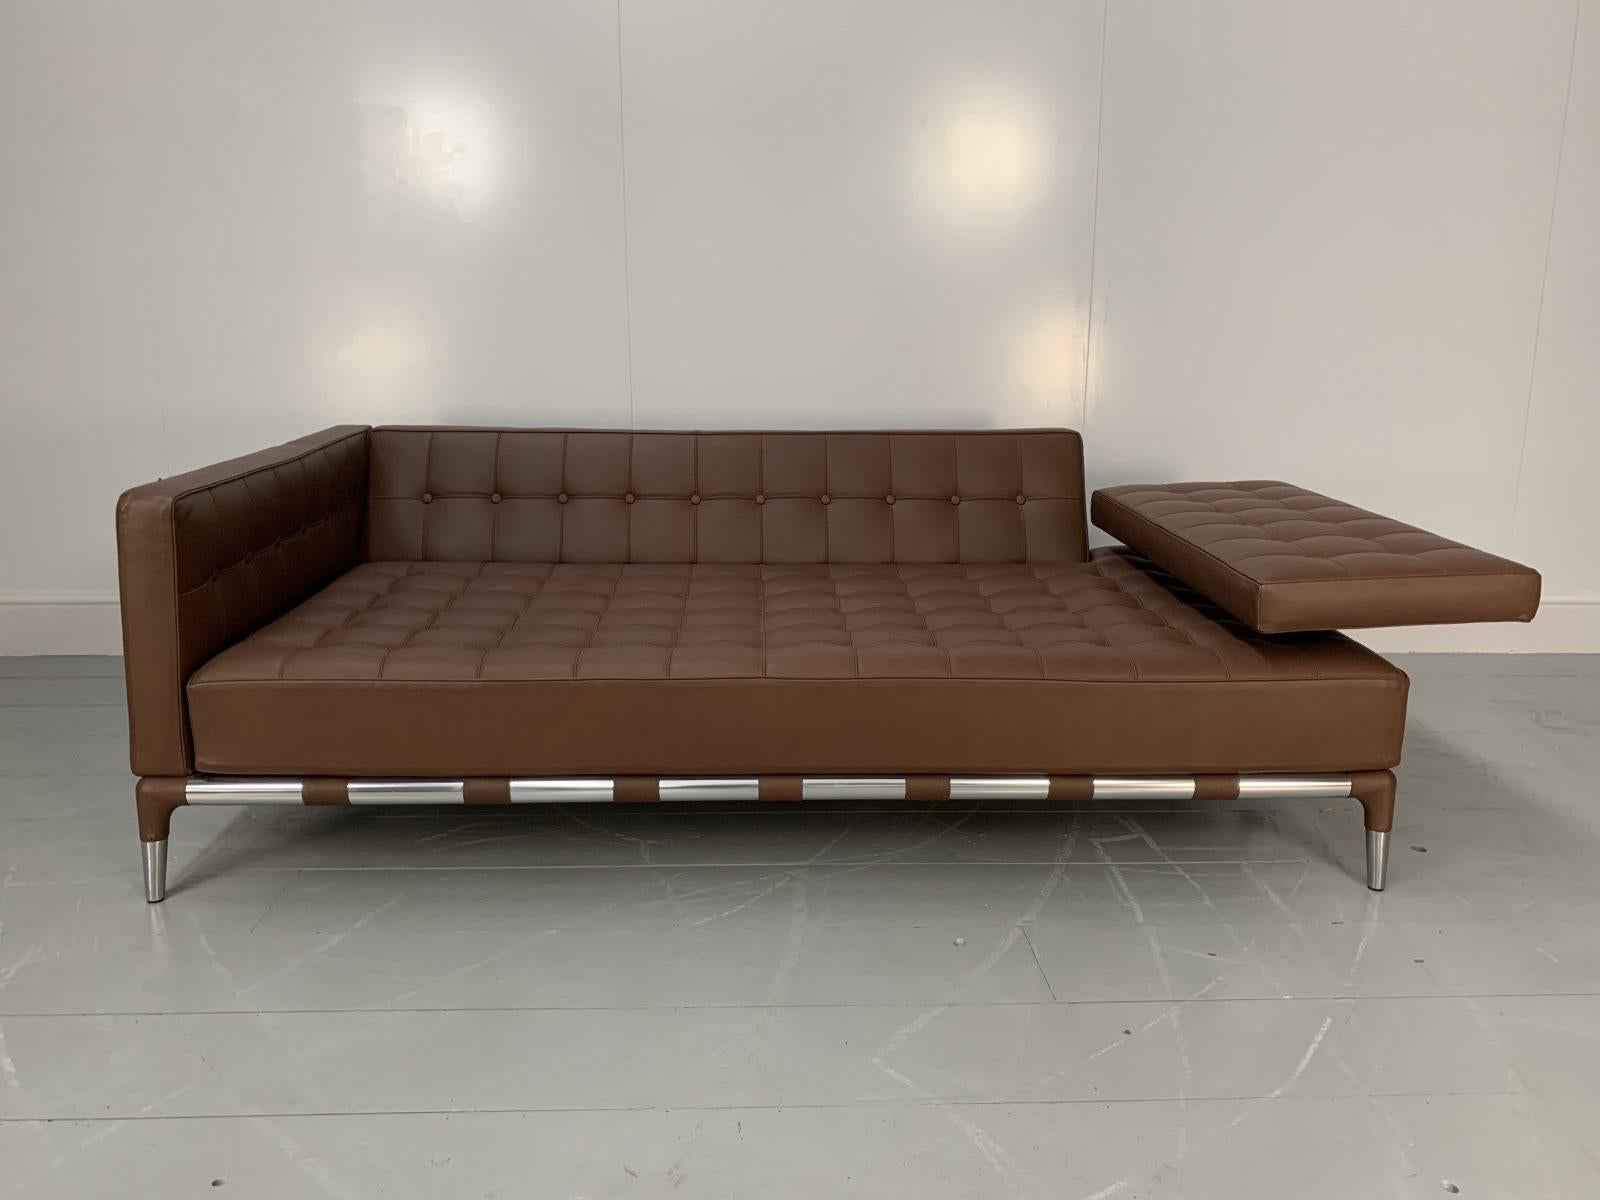 Cassina “241 Prive Divano” Sofa – in Mid-Brown “Pelle” Leather 6